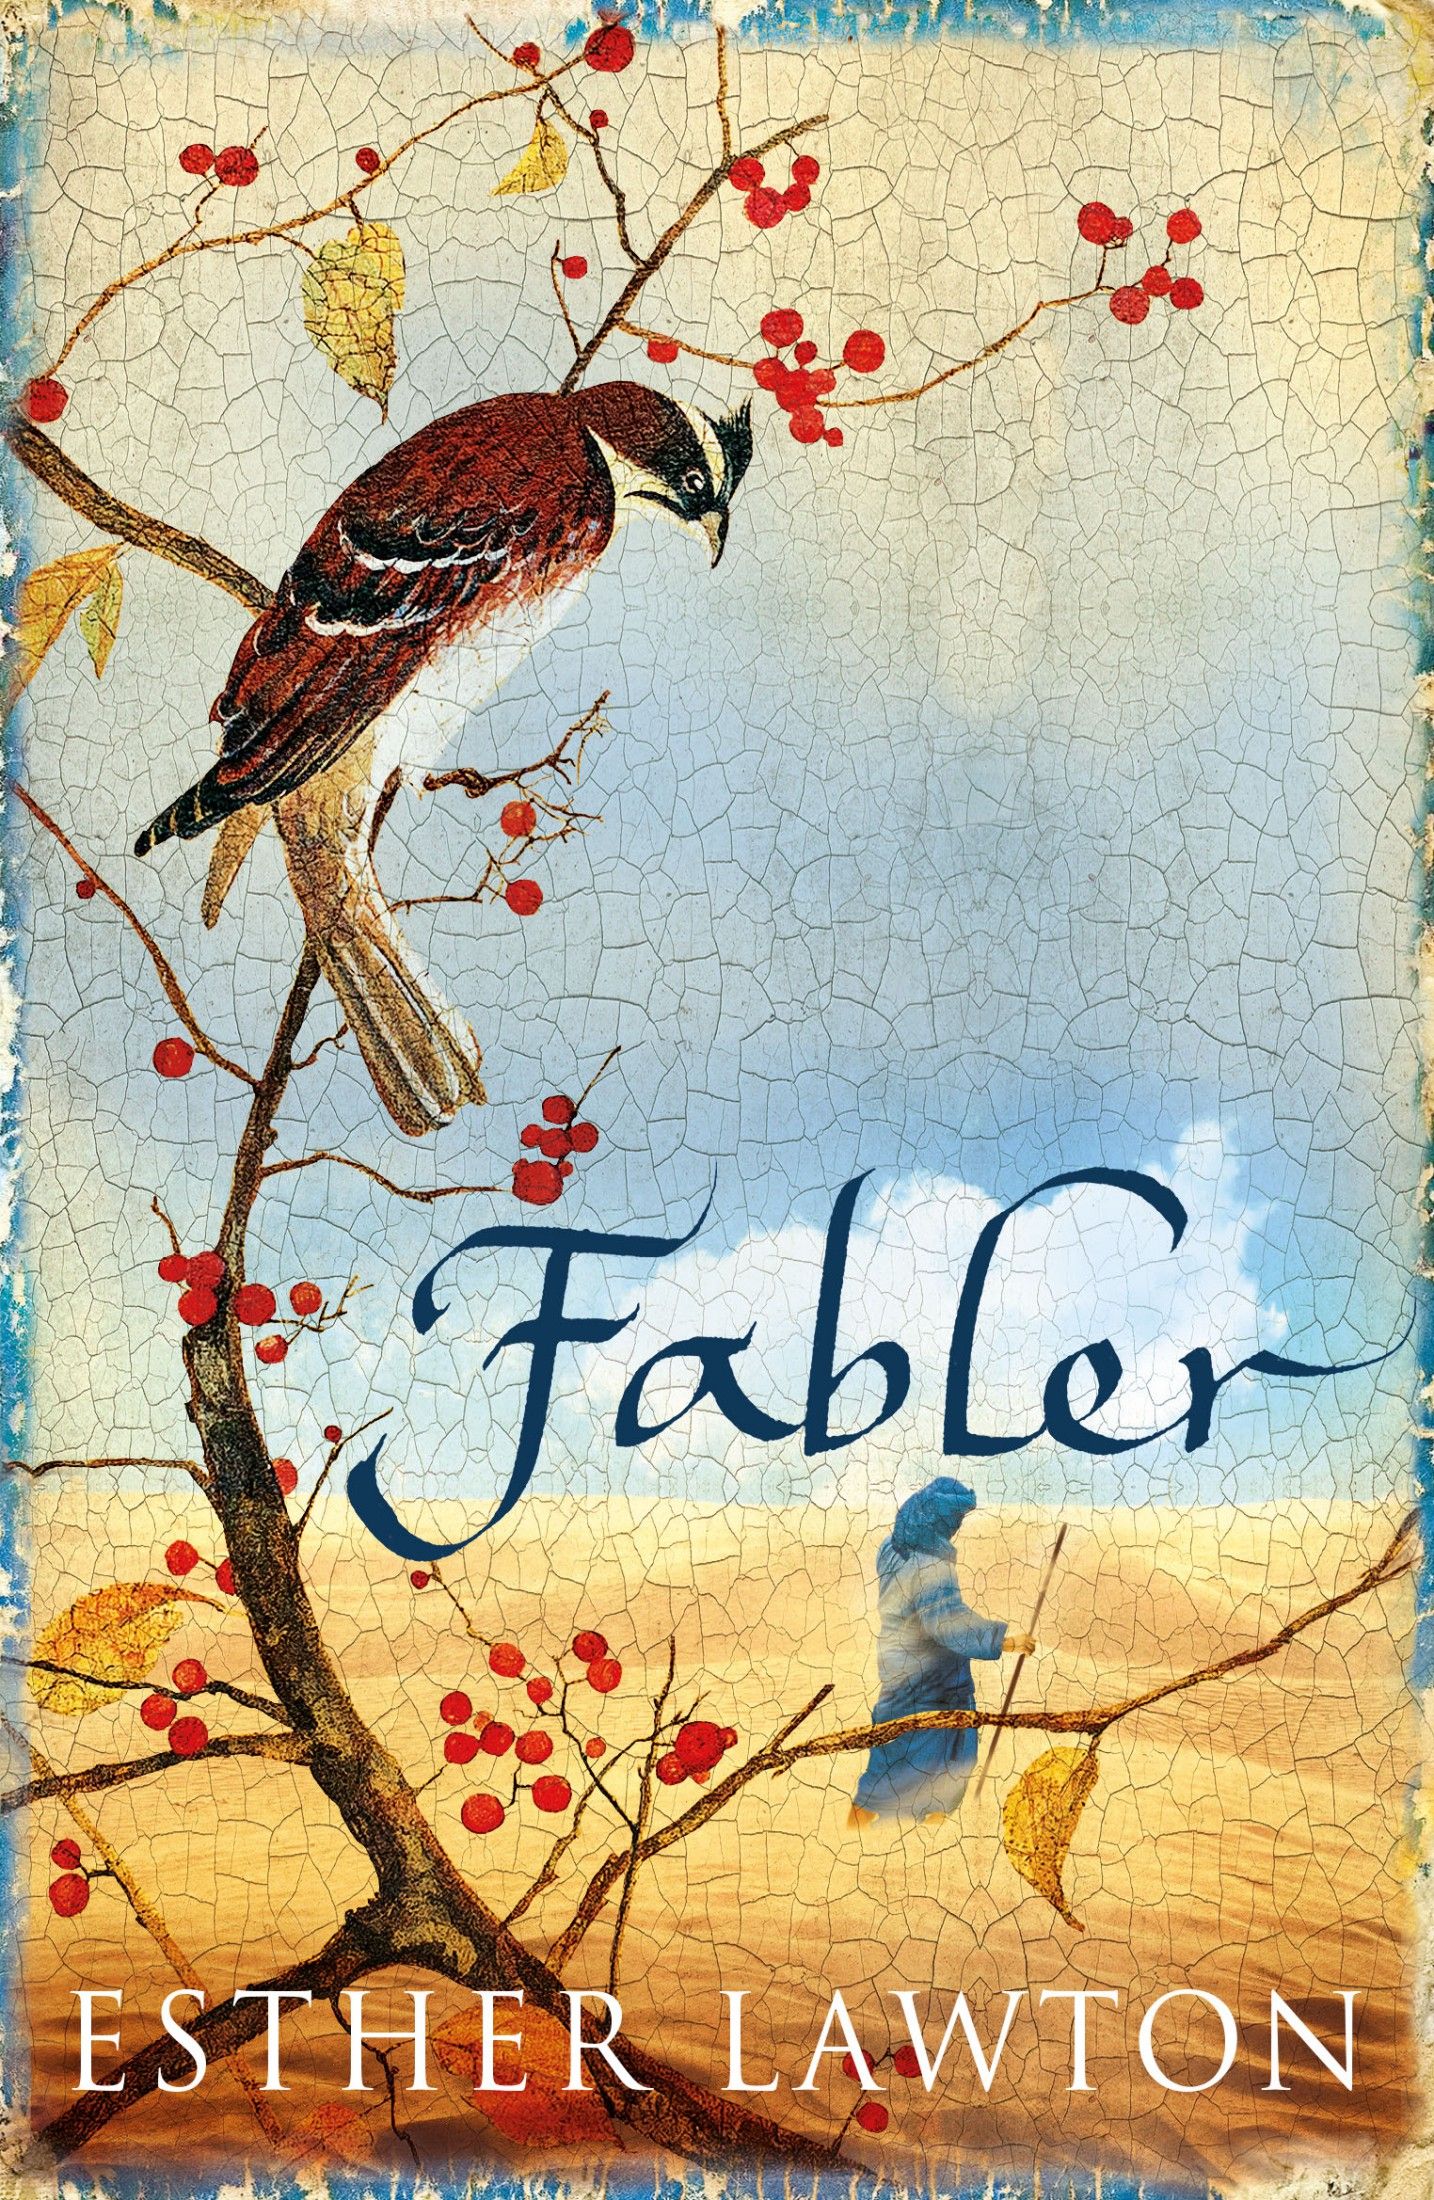 Fabler, e-bok av Esther Lawton